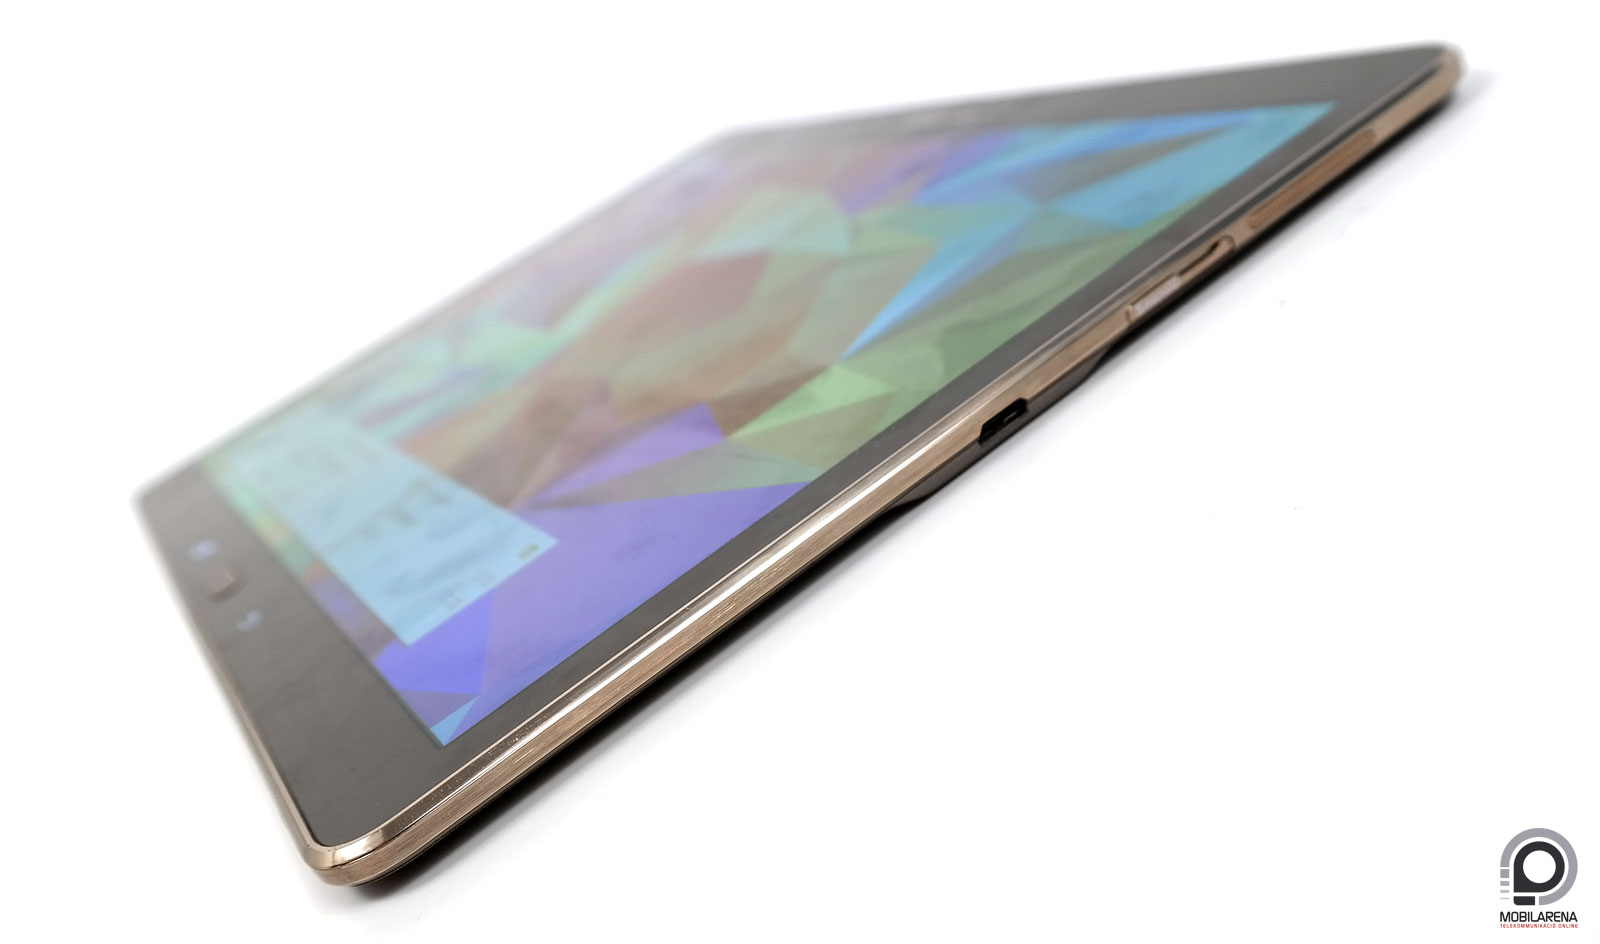 Samsung Galaxy Tab S 10.5 - magas képesítés - Mobilarena Tablet teszt